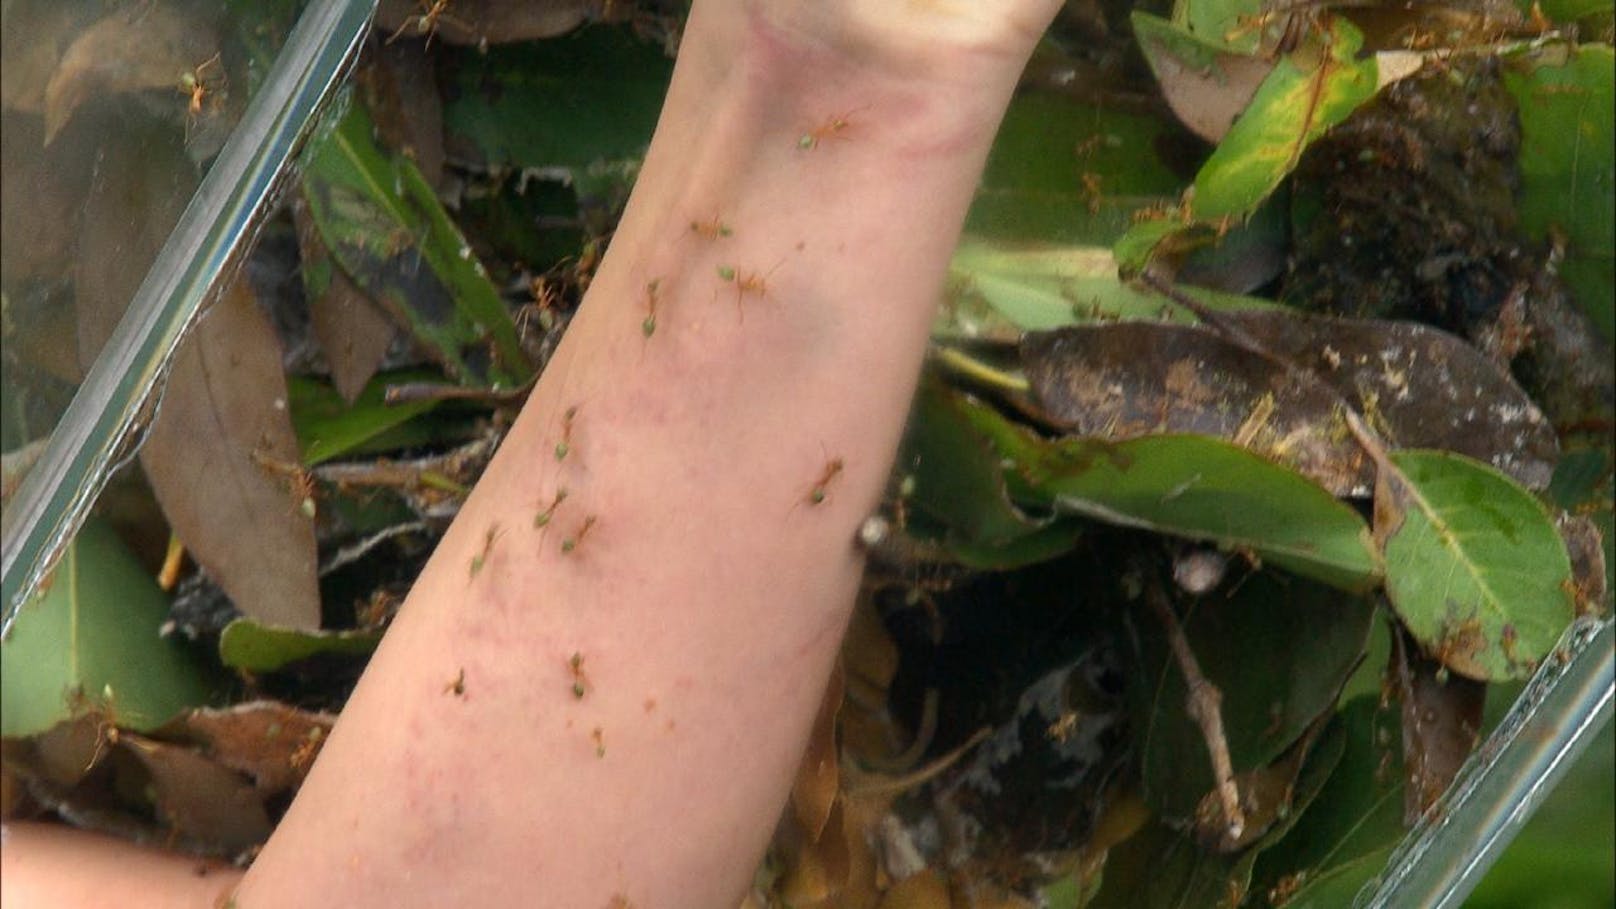 Jenny bekommt für jedes Glied eine eigene Folter. Am linken Arm beißen sie grüne Ameisen: "Oh Gott, es tut weh. Was mache ich alles für Futter? Wie kann man nur so verfressen sein?" 